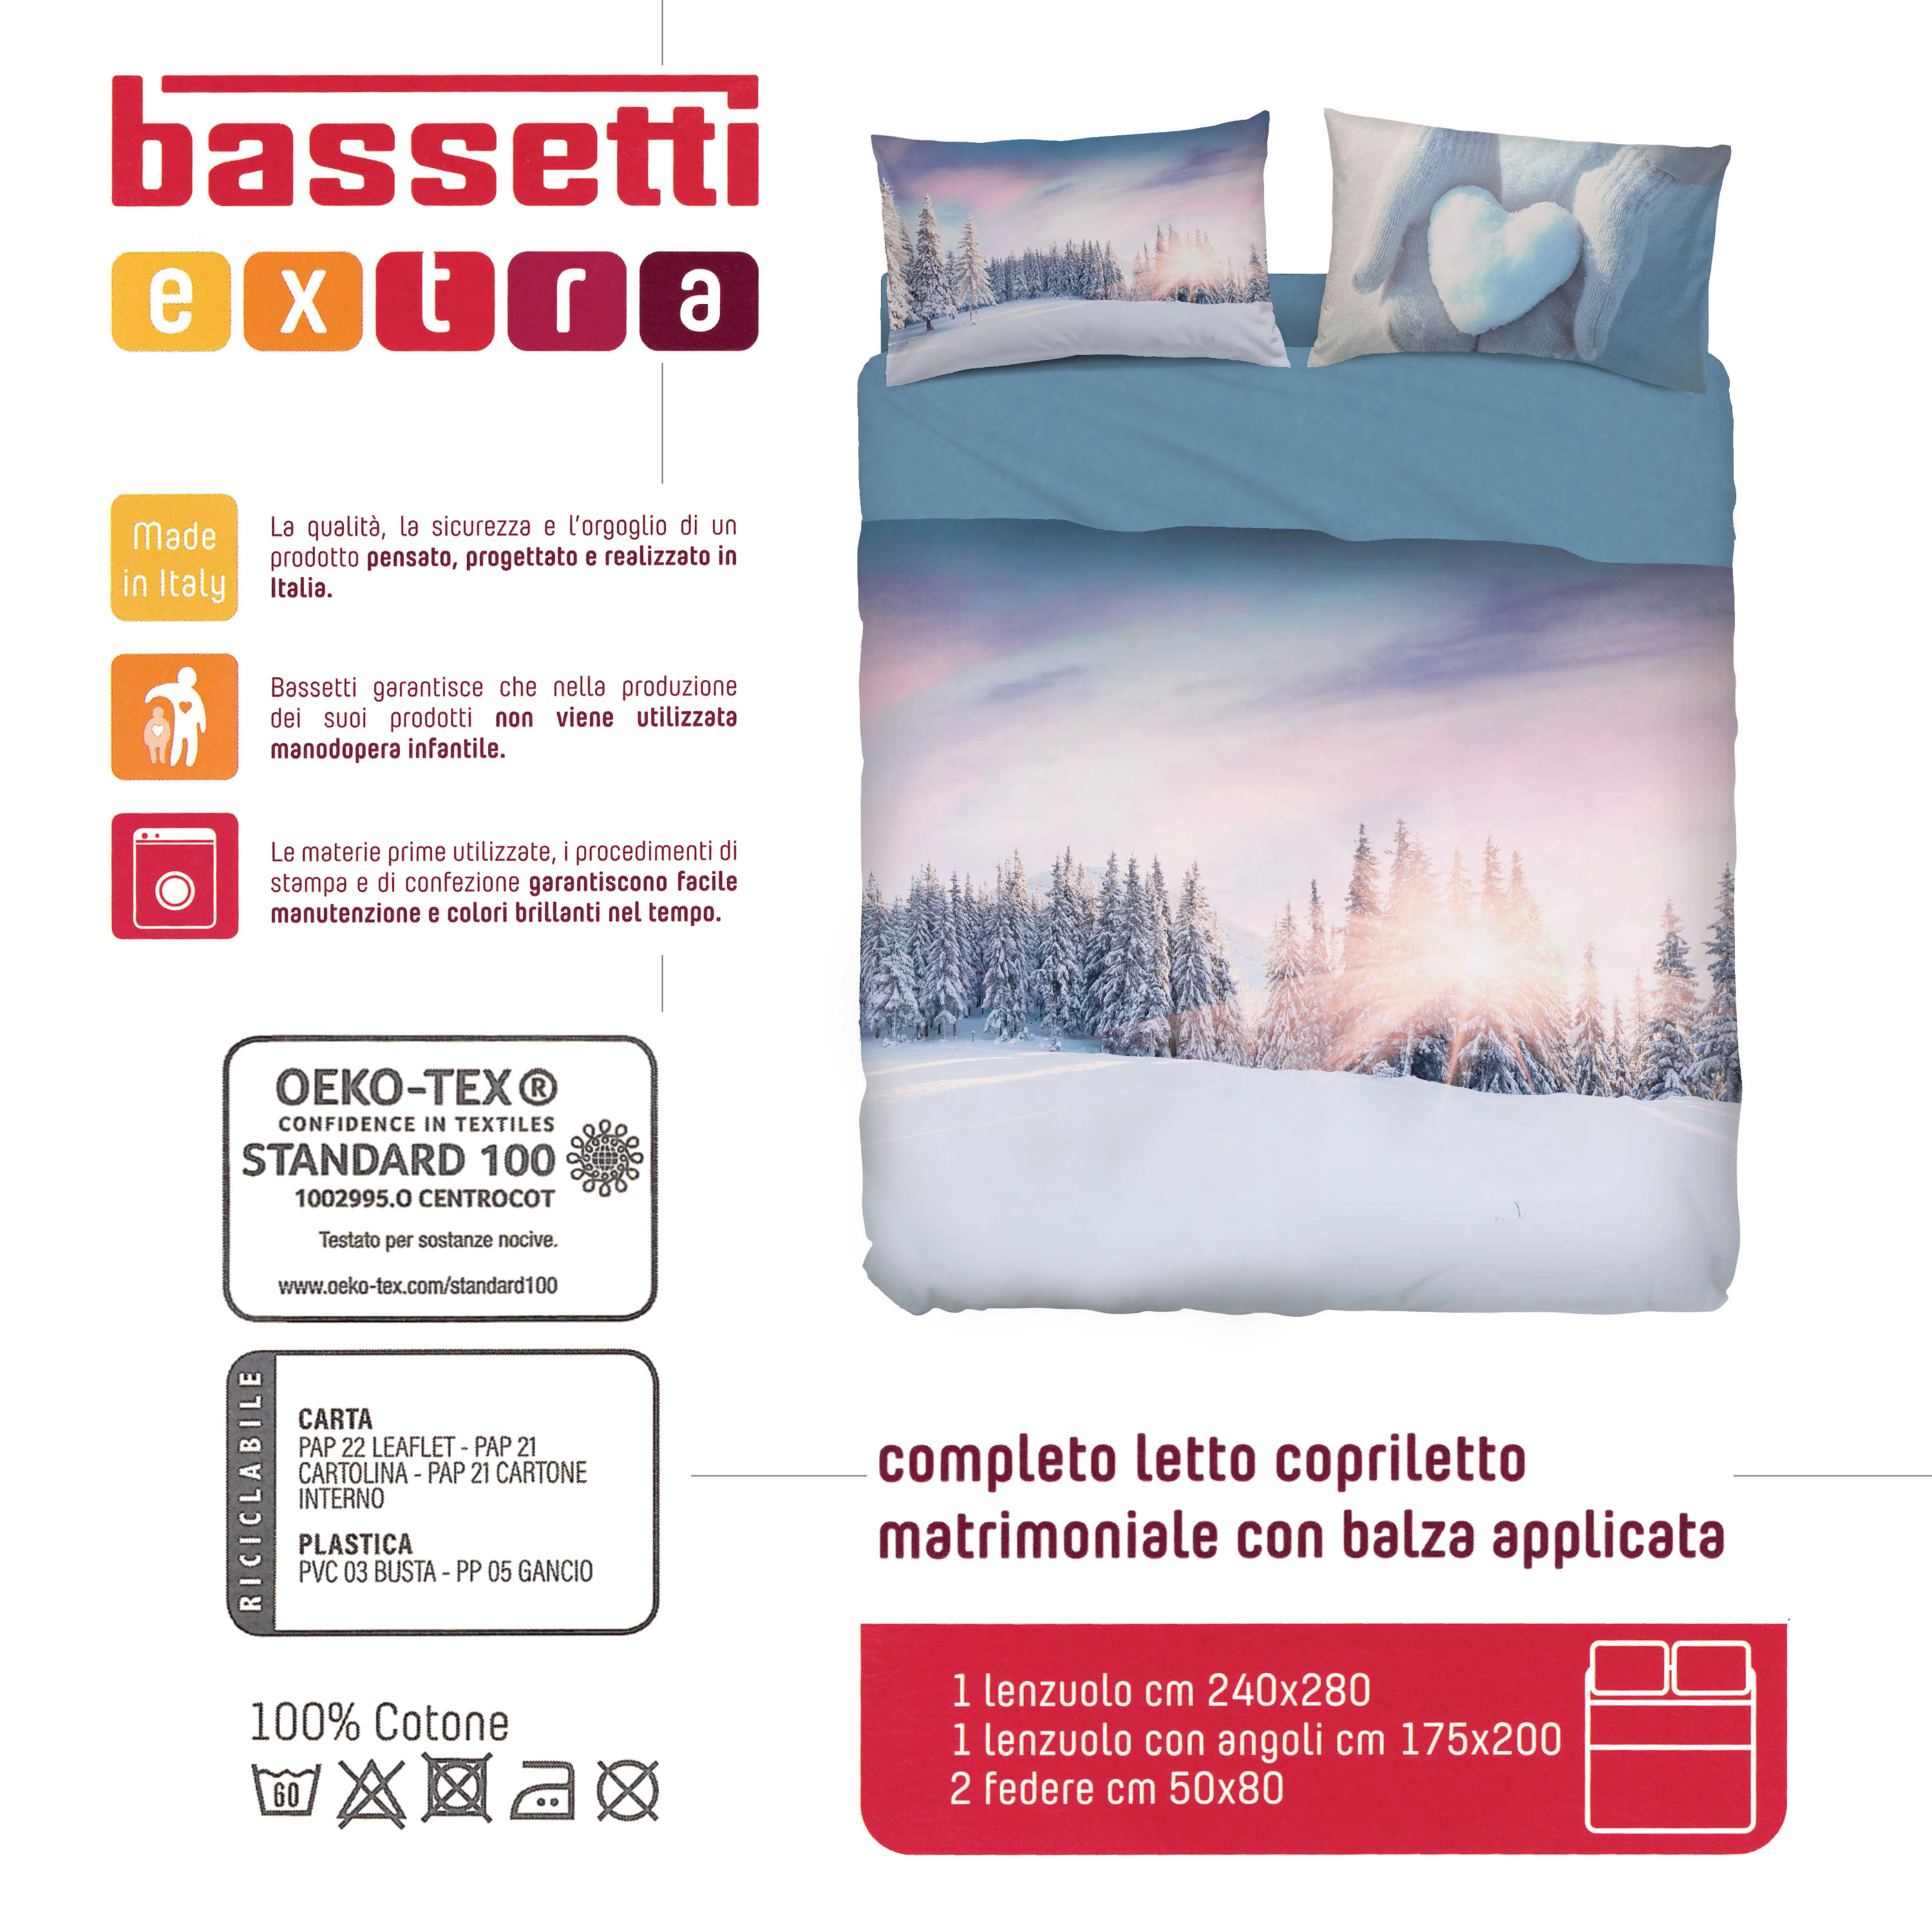 Bassetti Imagine Completo Sacco Copripiumino Matrimoniale Stampa Digitale  Made in Italy, Boulevard